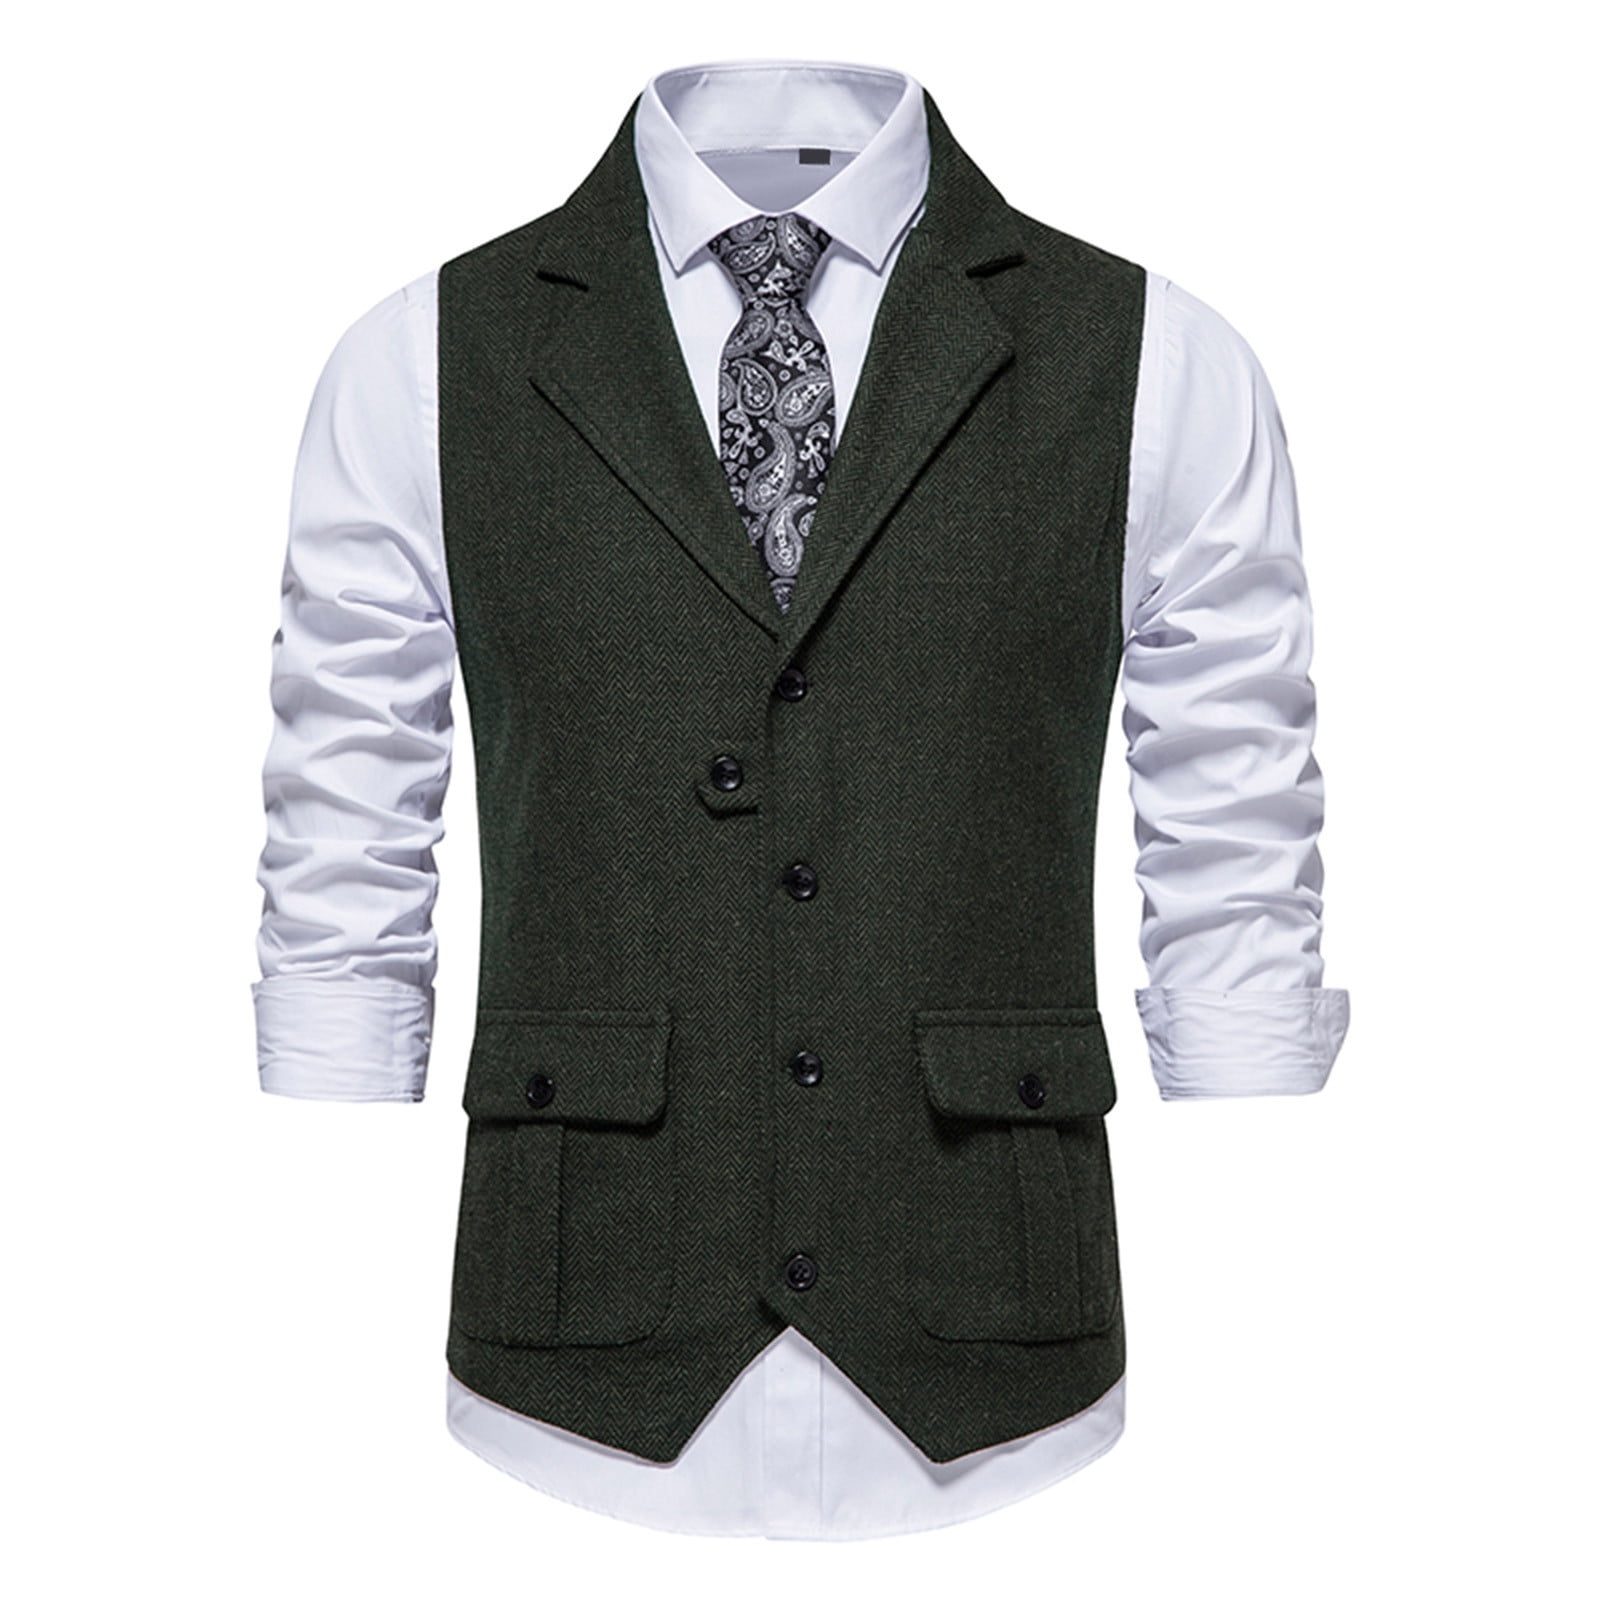 Paiwinds Men's Suit Vest, Business Vest for Herringbone Tweed Suit, V ...